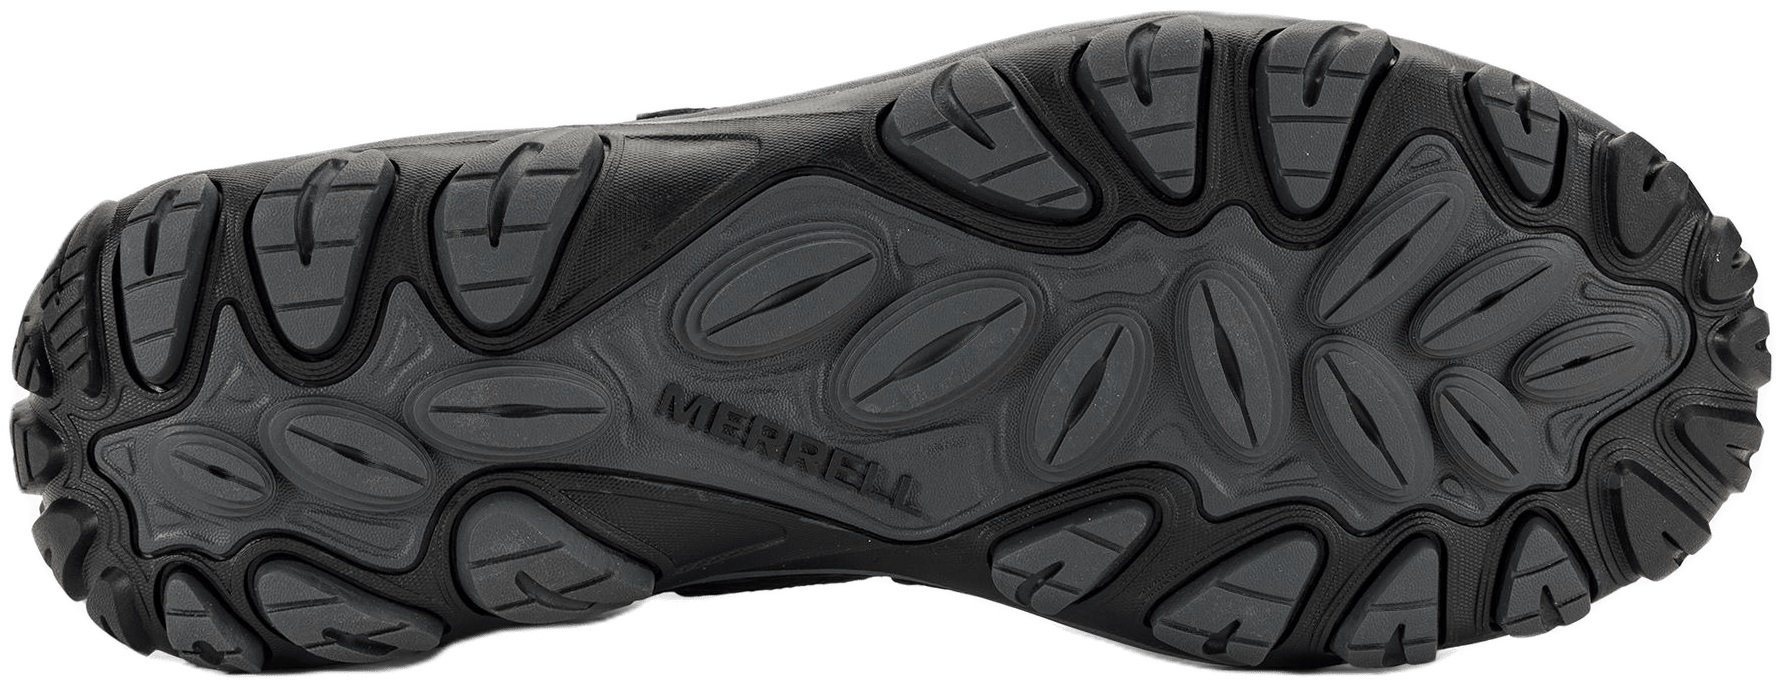 Ботинки мужские Merrell West Rim Sport MID GTX black 43 черный фото 5